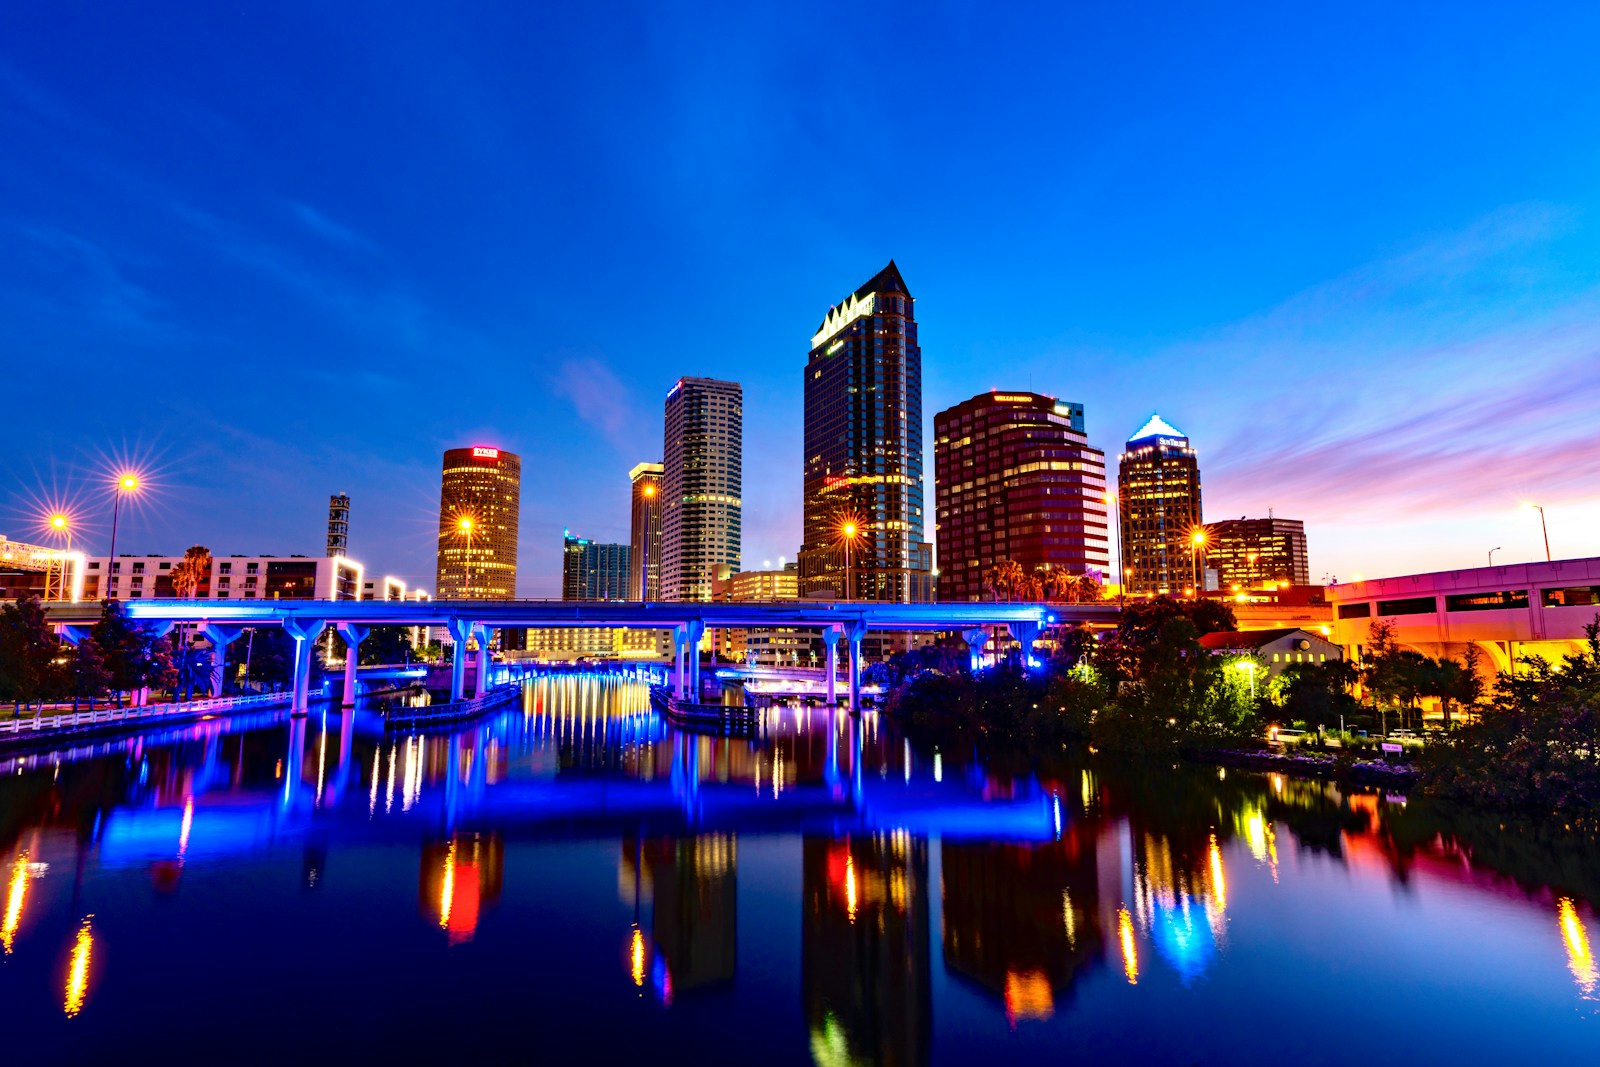 Tampa Florida | Turning Point of Tampa